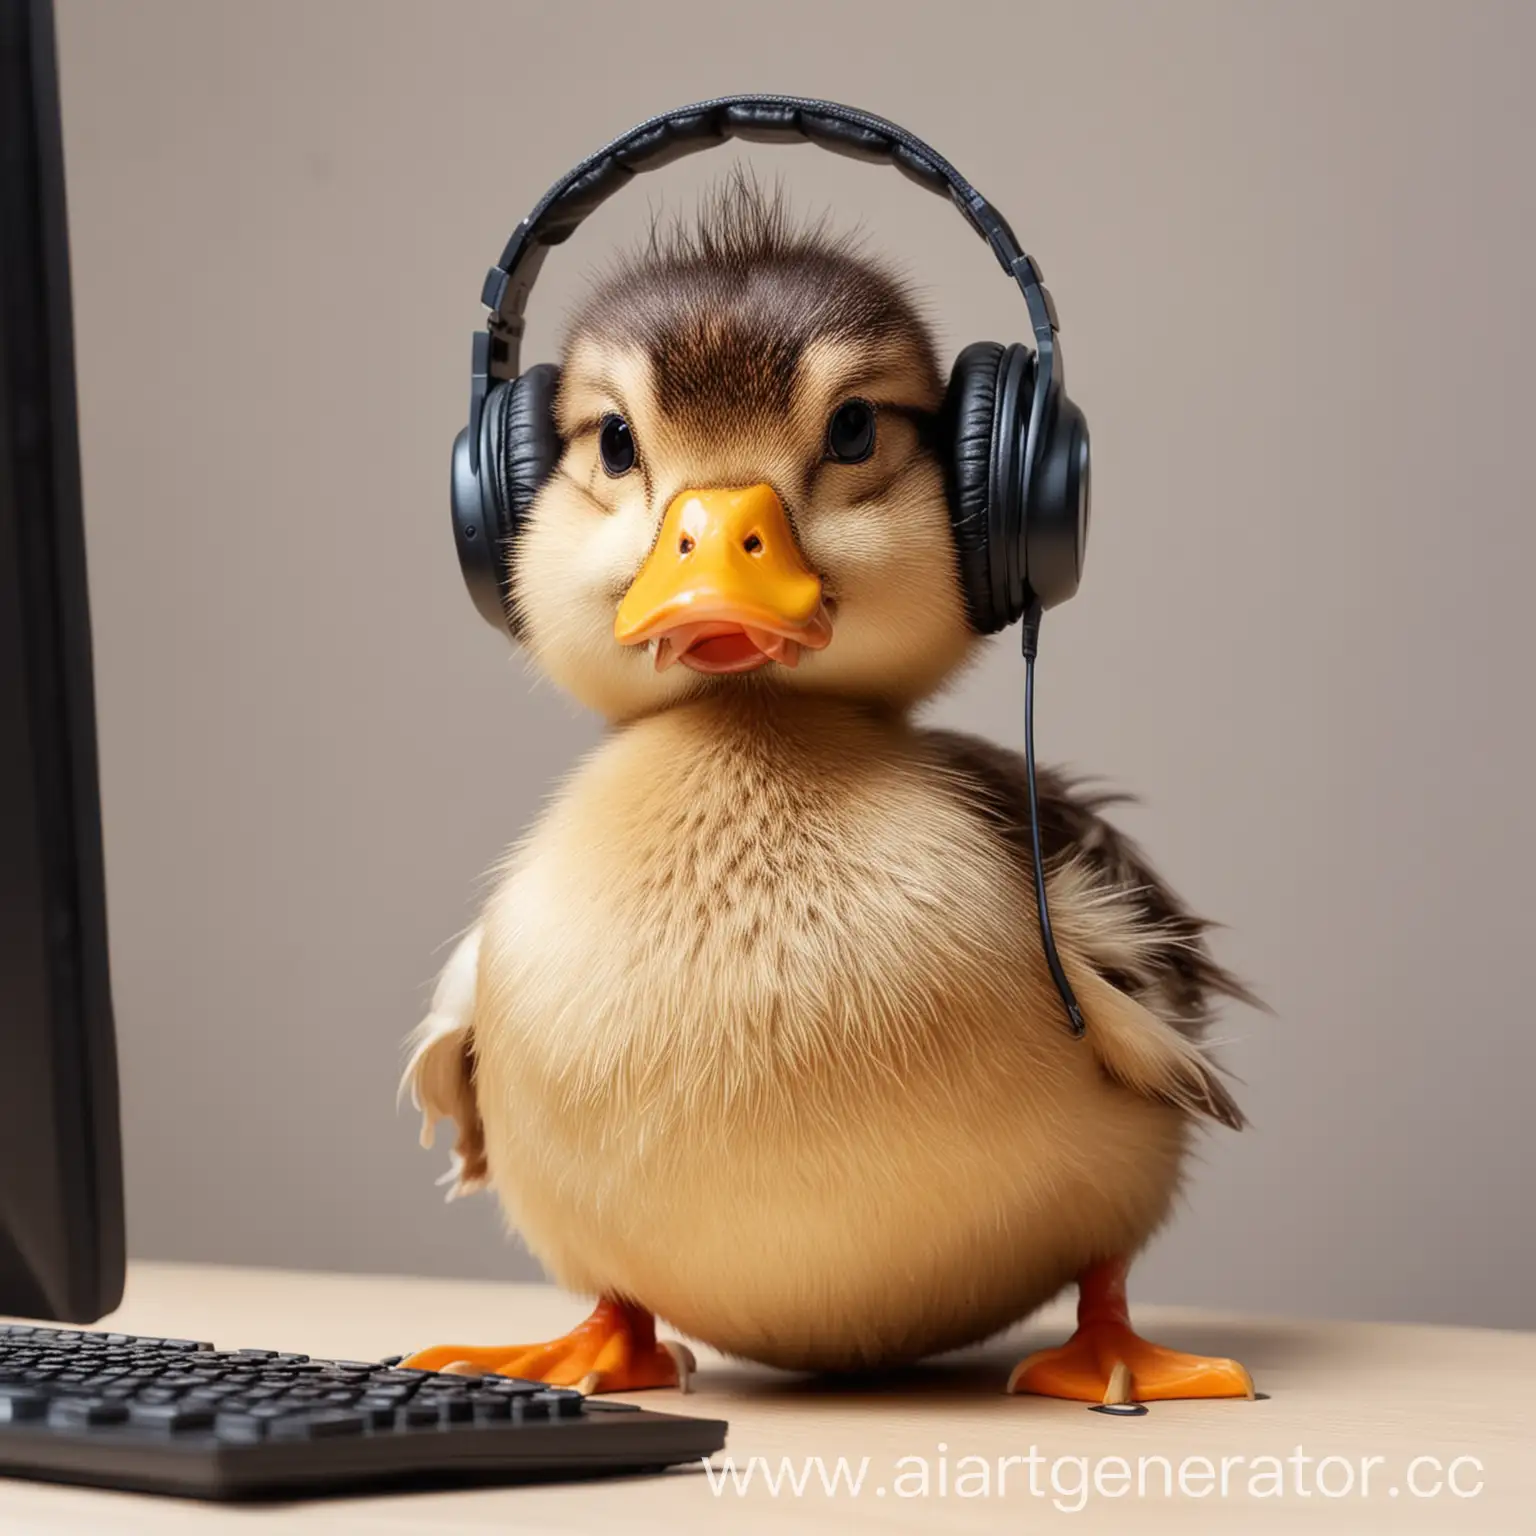 Duck-Wearing-Headphones-Working-in-Call-Center